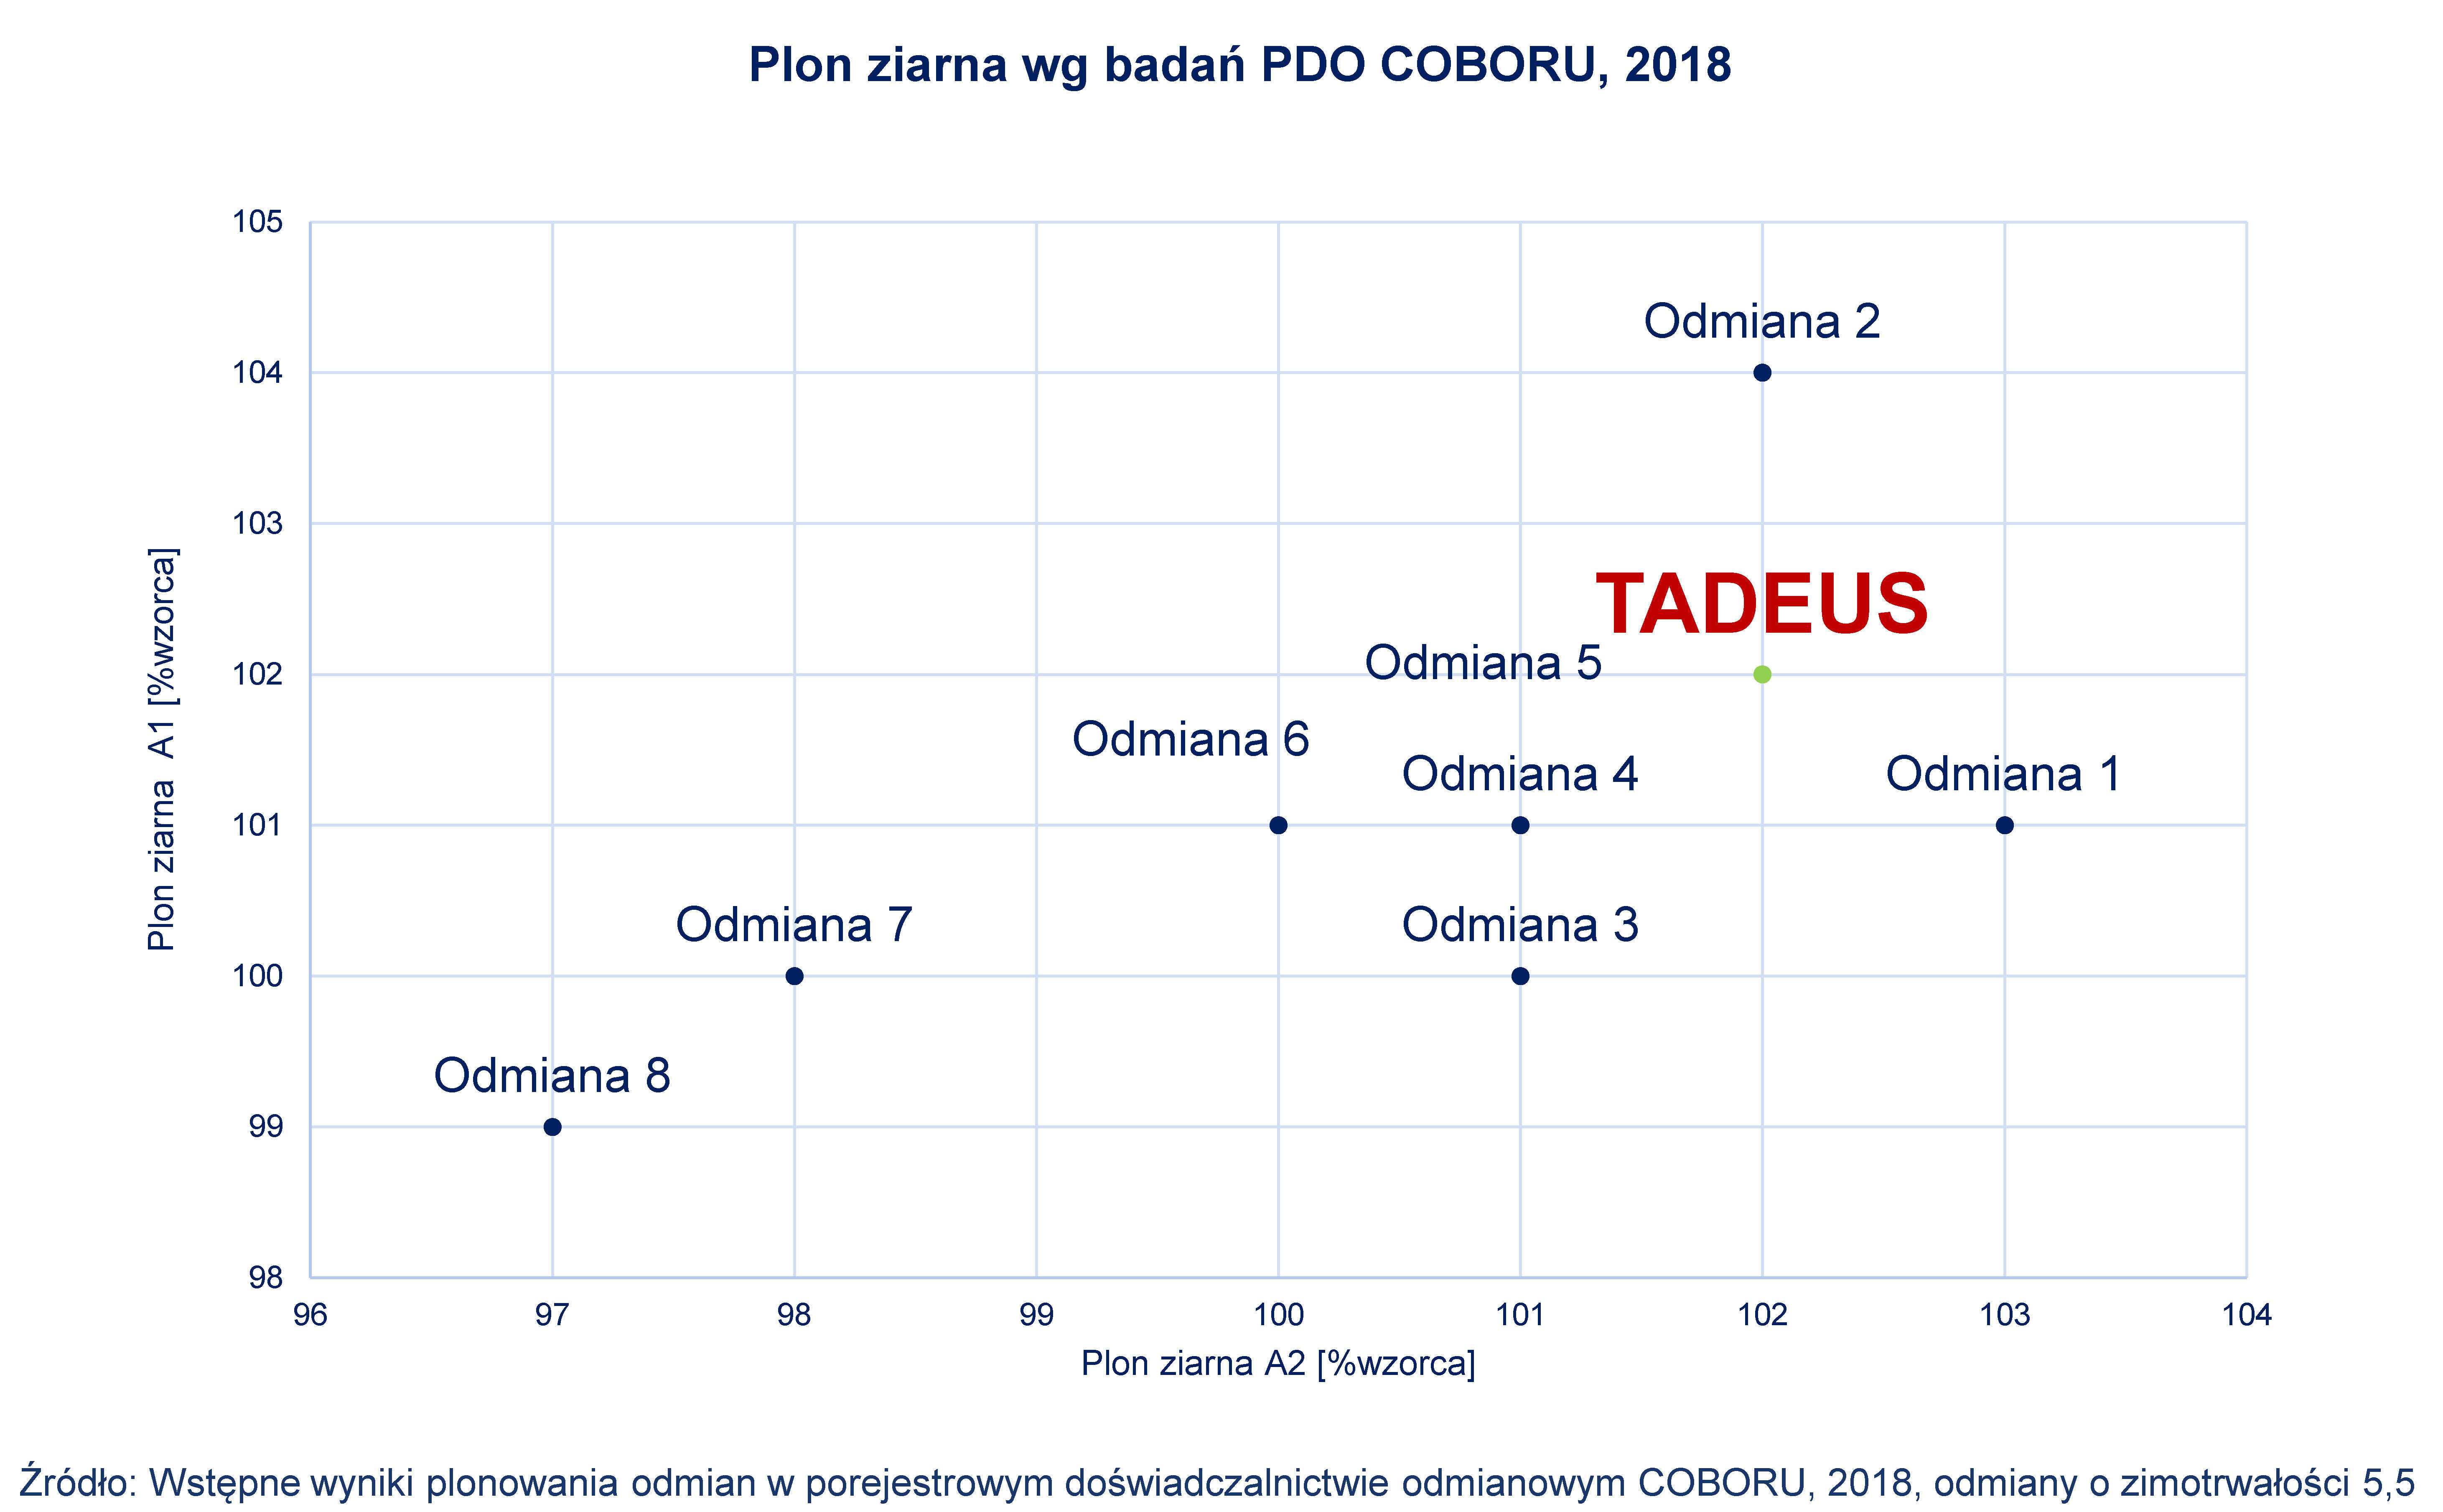 SU Tadeus - plon ziarna wg badań PDO COBORU, 2018